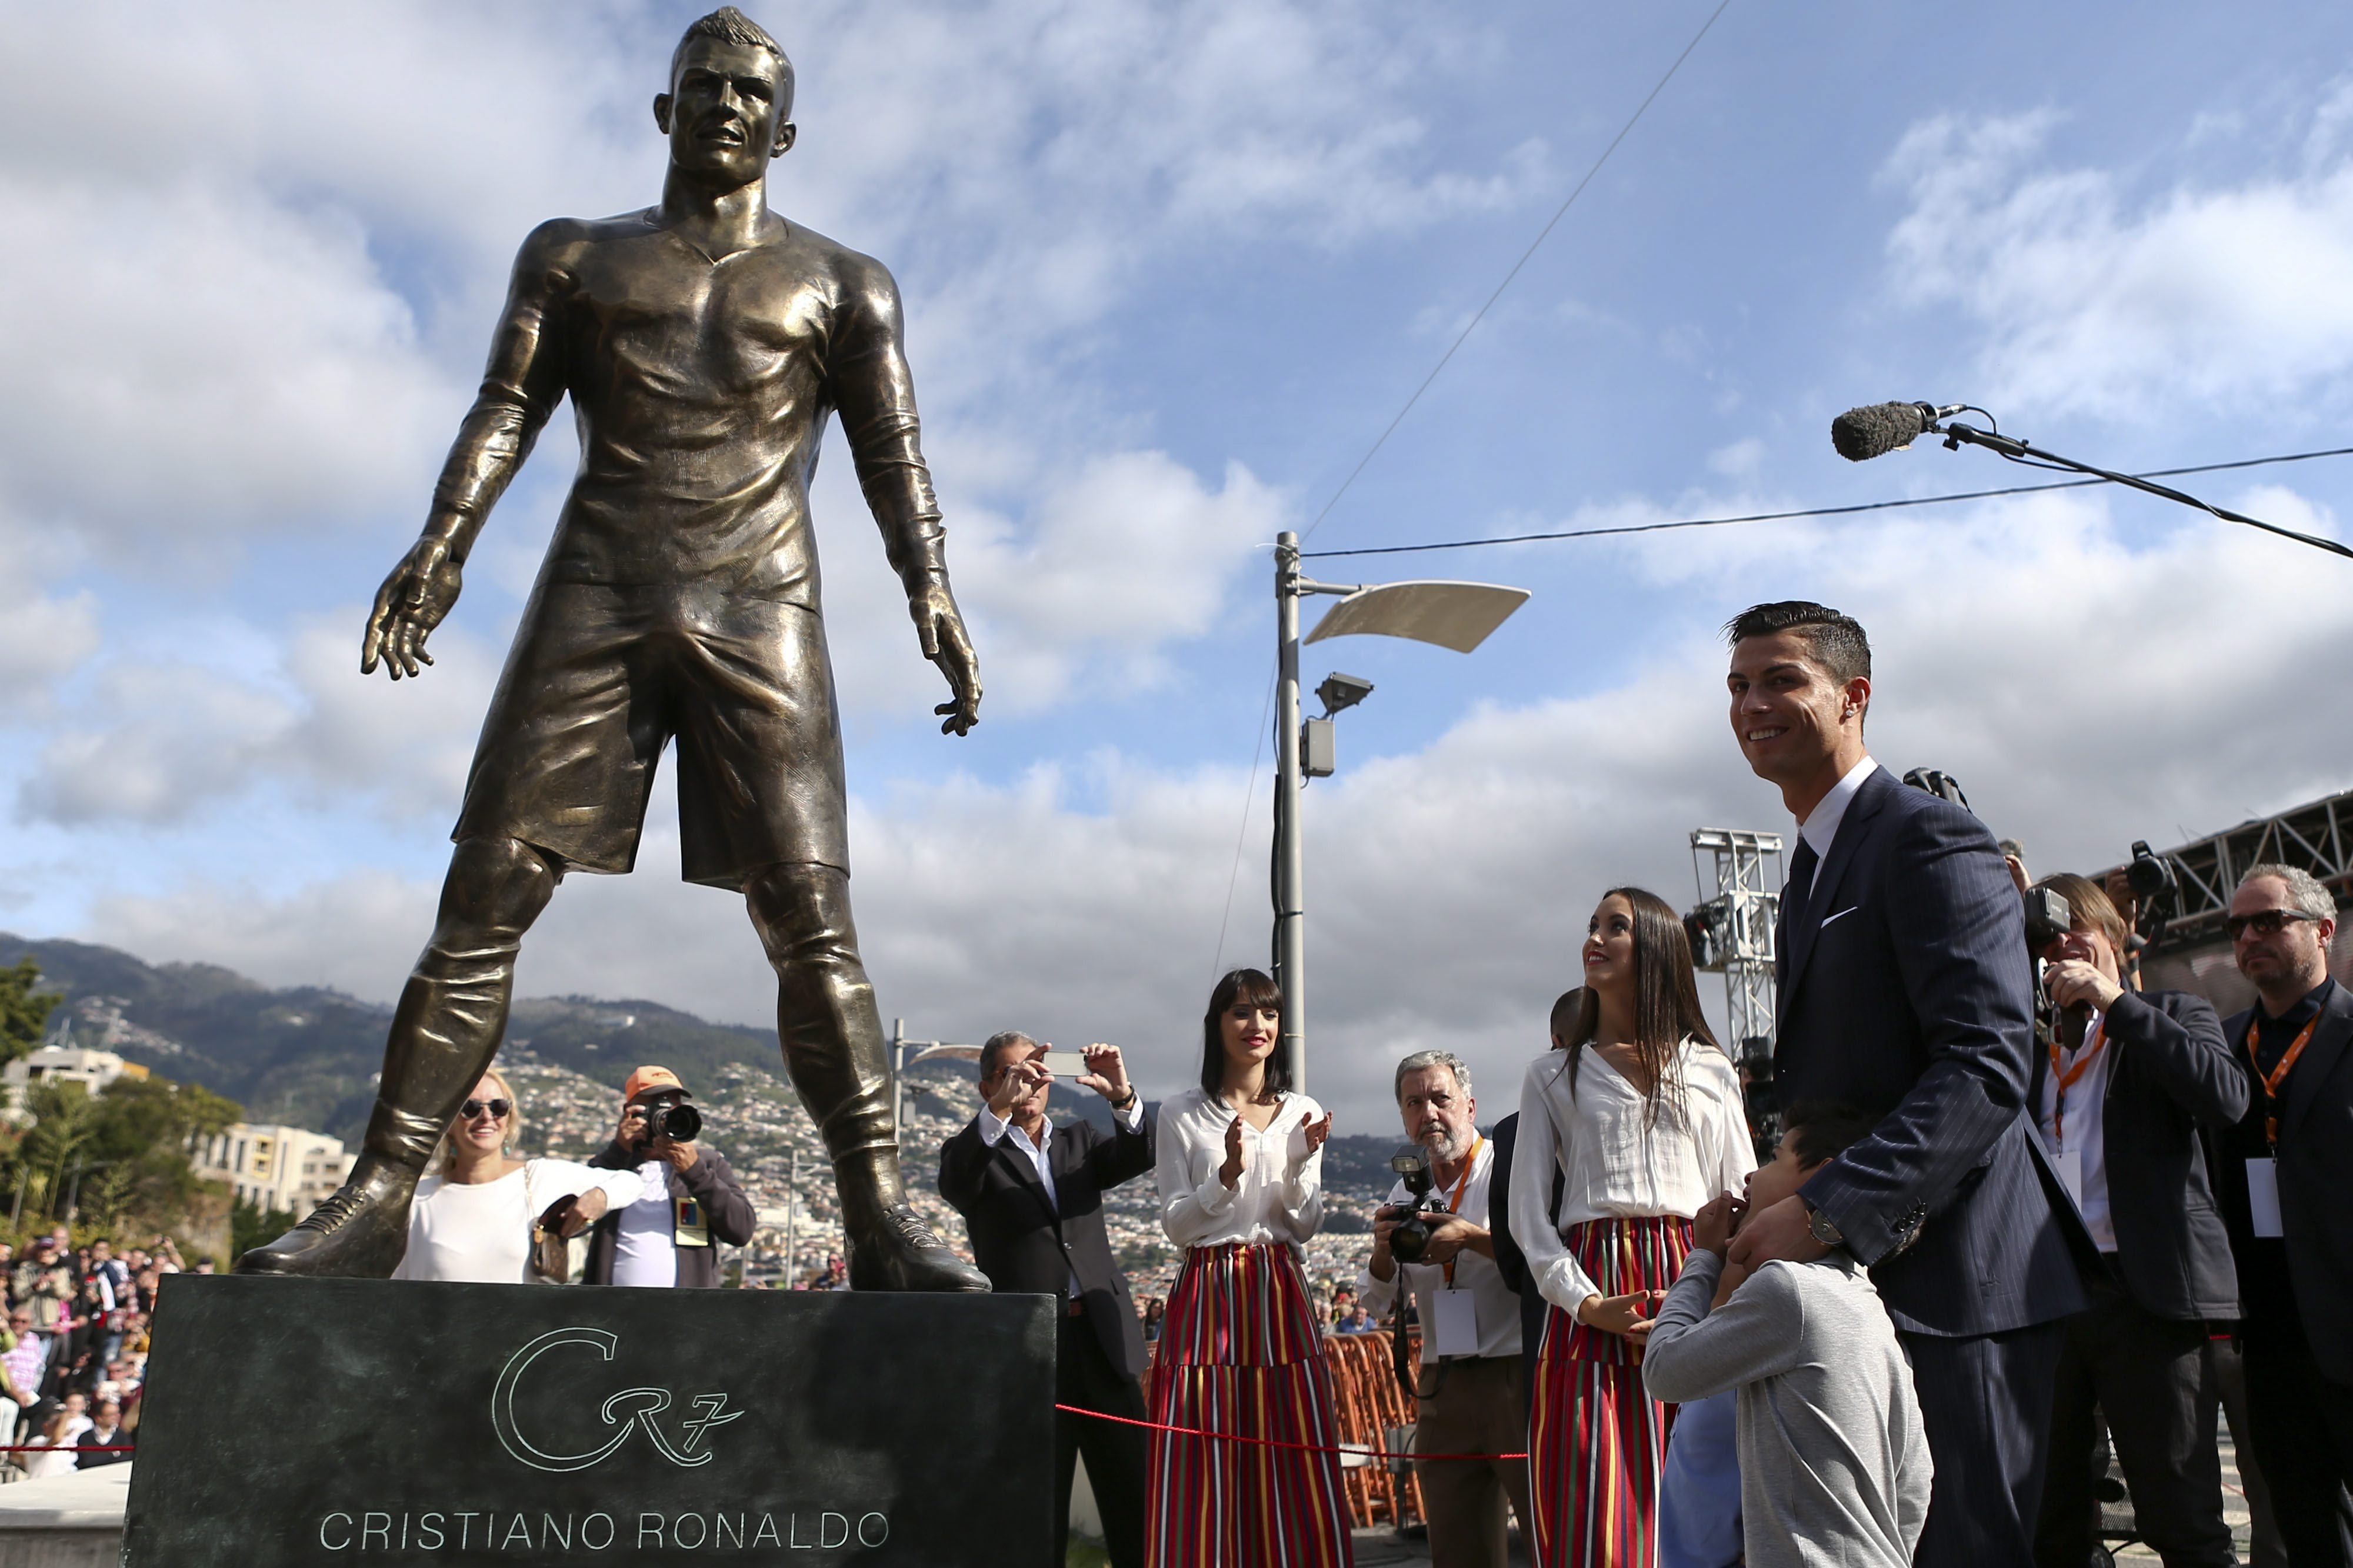 Cristiano Ronaldo Statue Erected in Portugal | Time